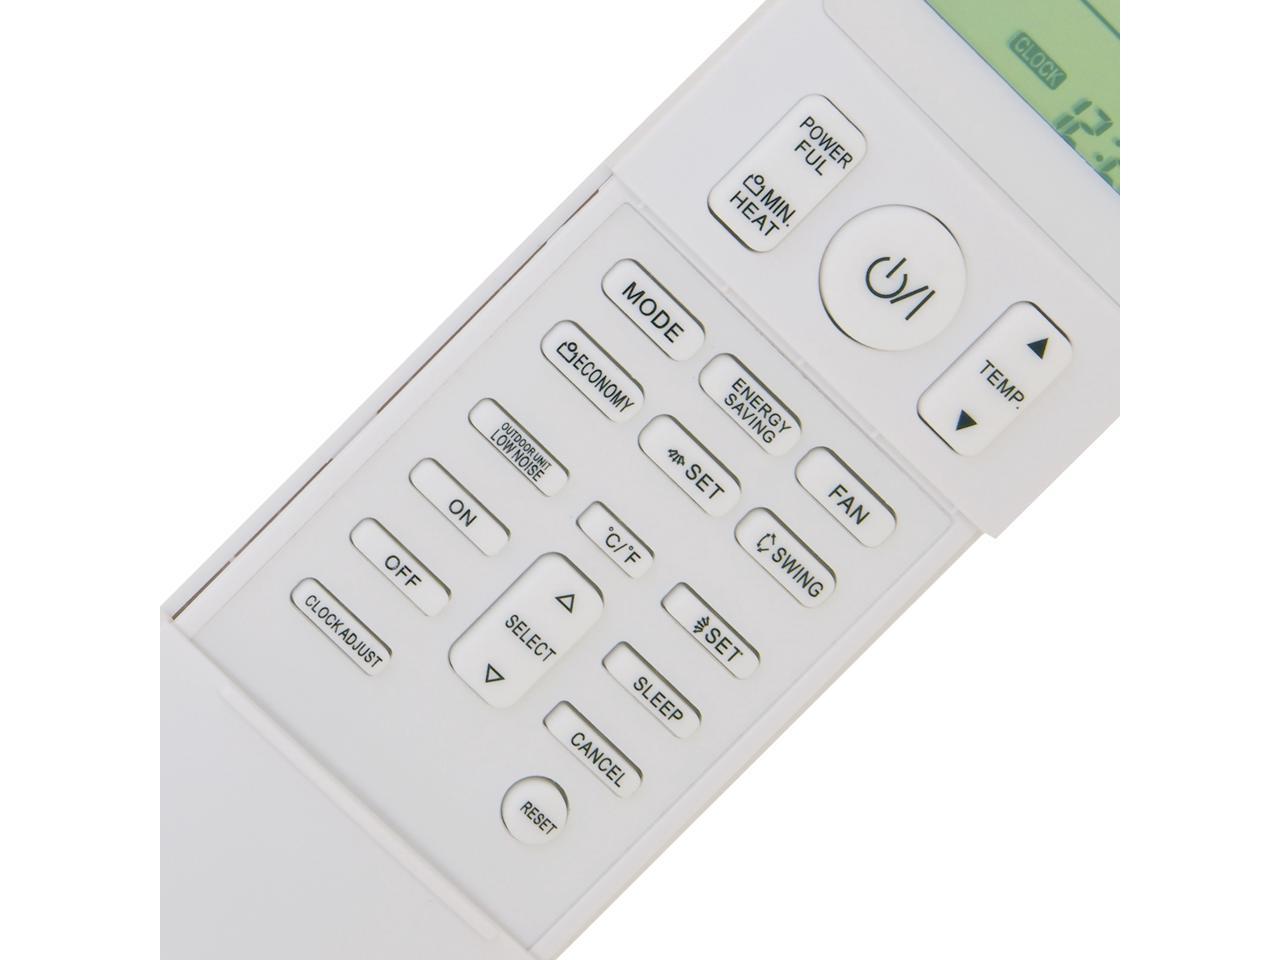 Fujitsu ductless mini split remote control AR-REG1U 